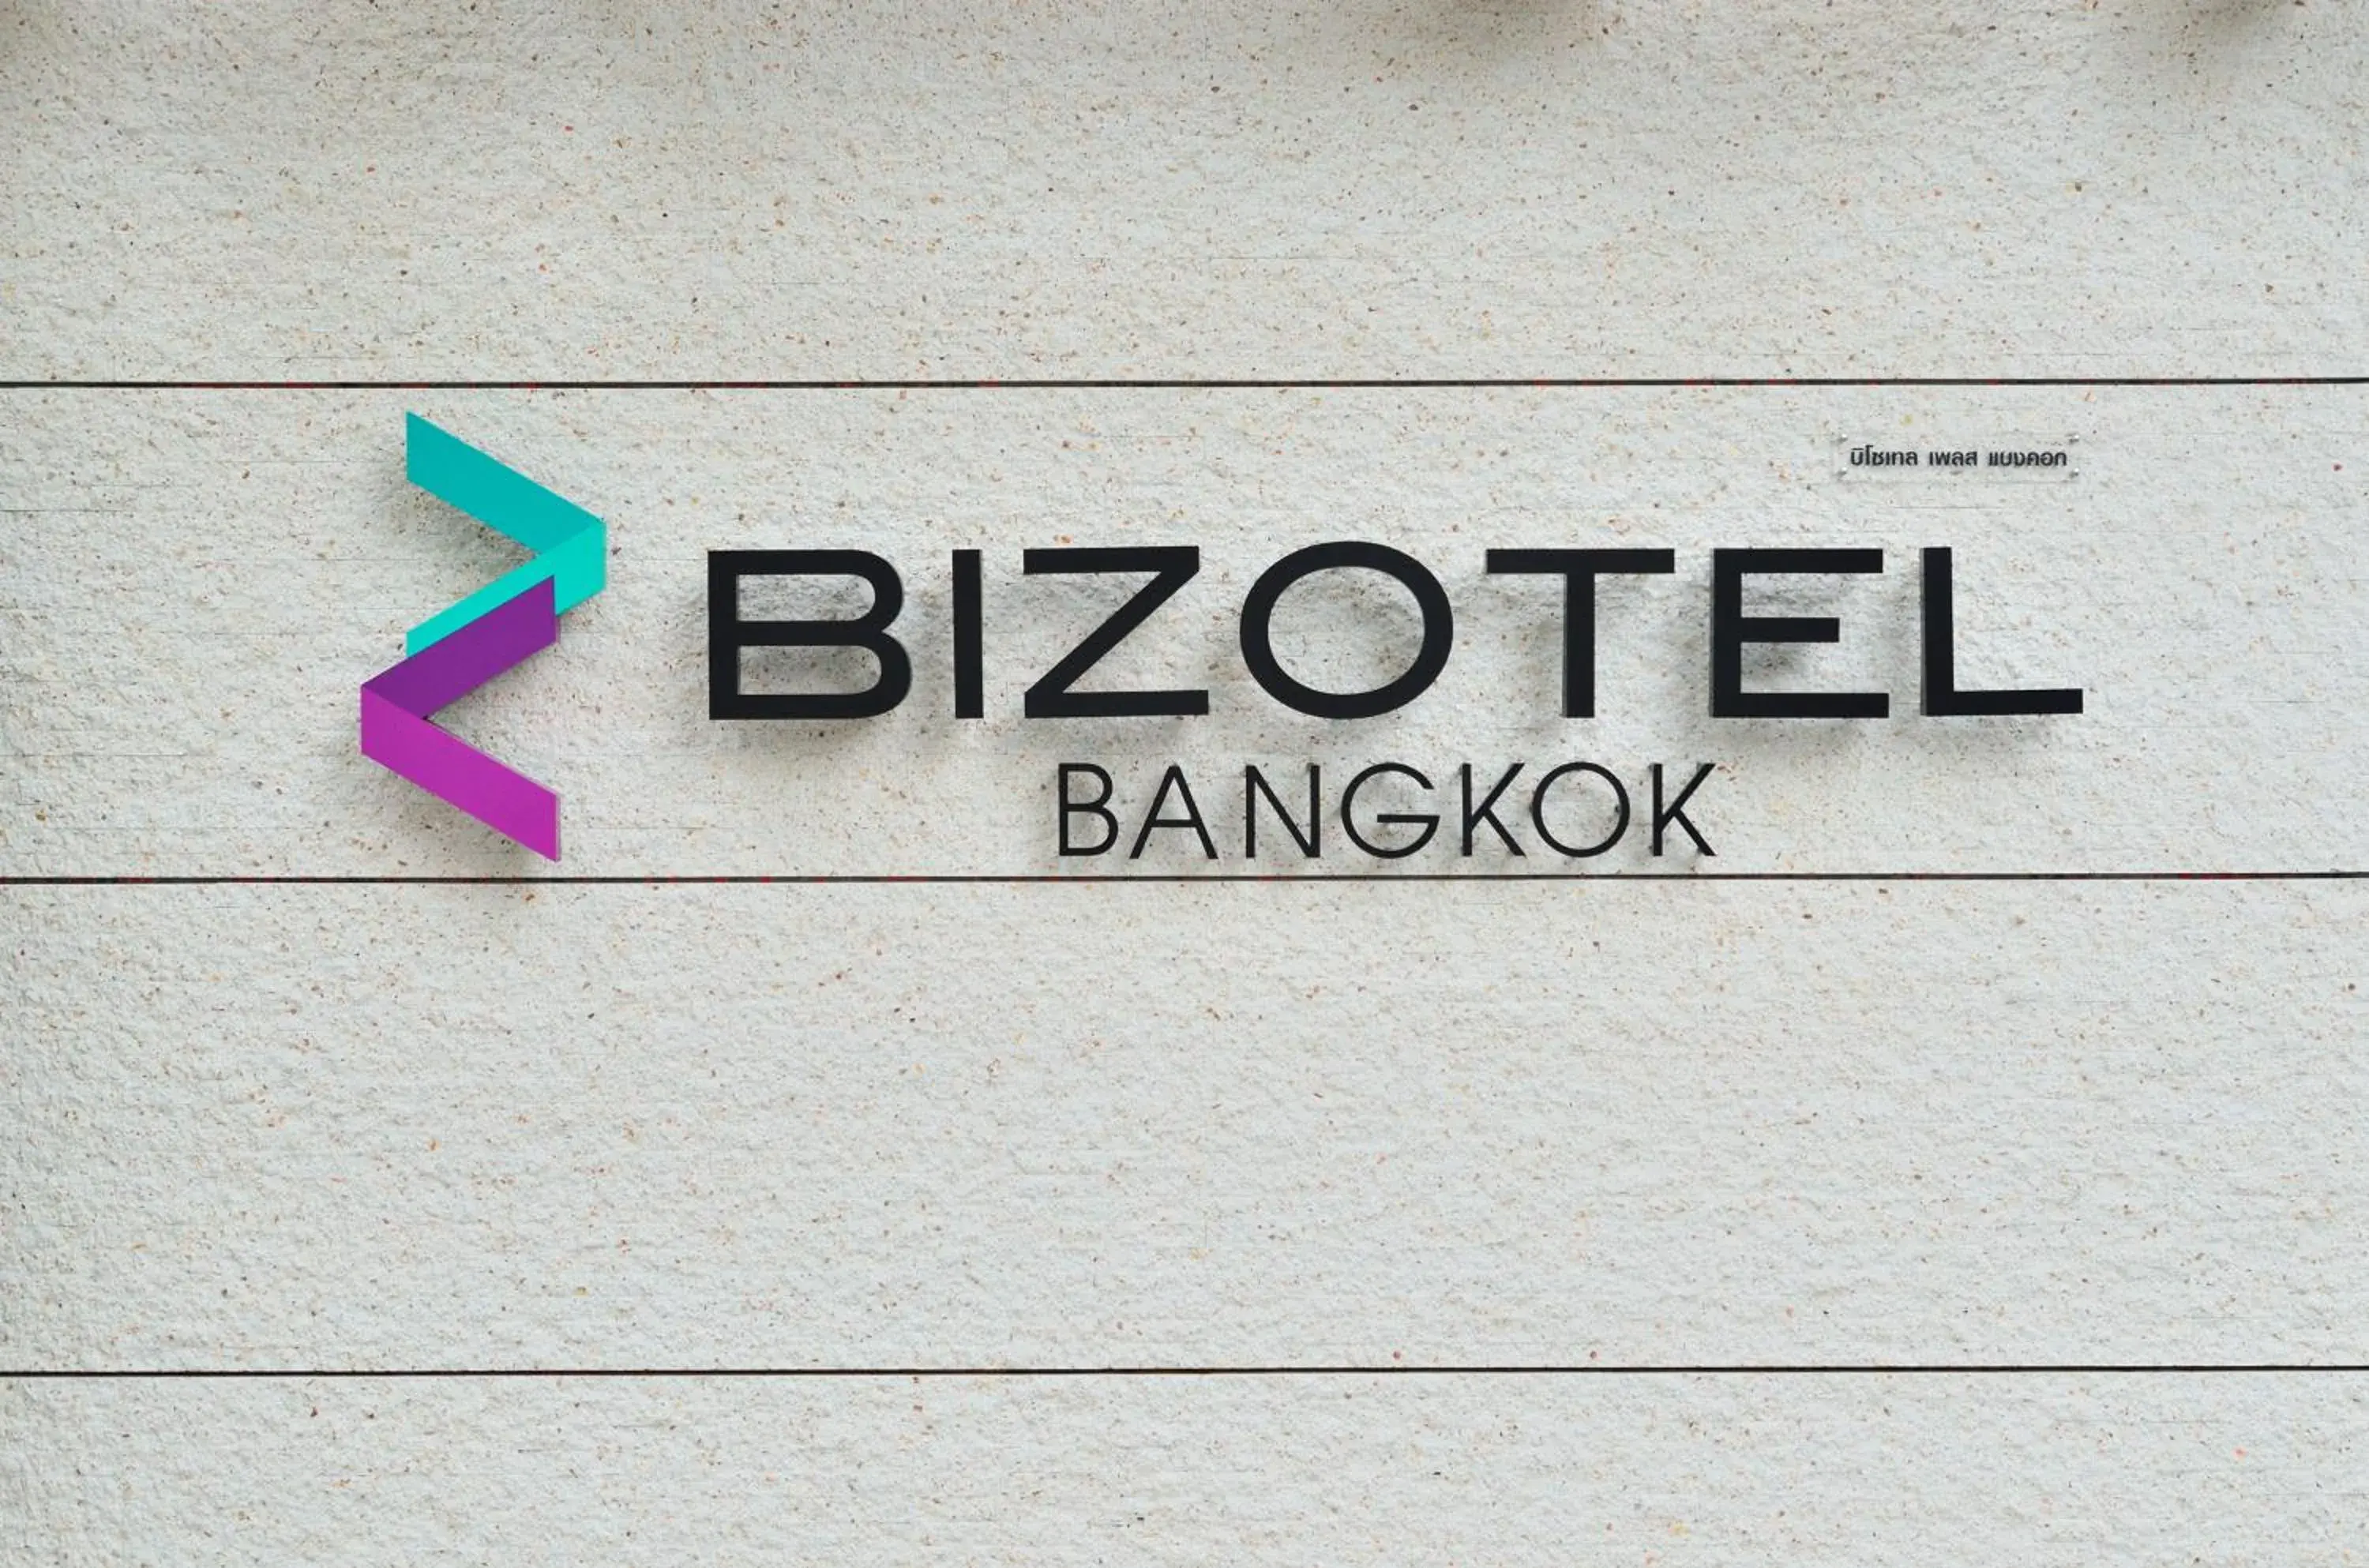 Other in Bizotel Premier Hotel & Residence